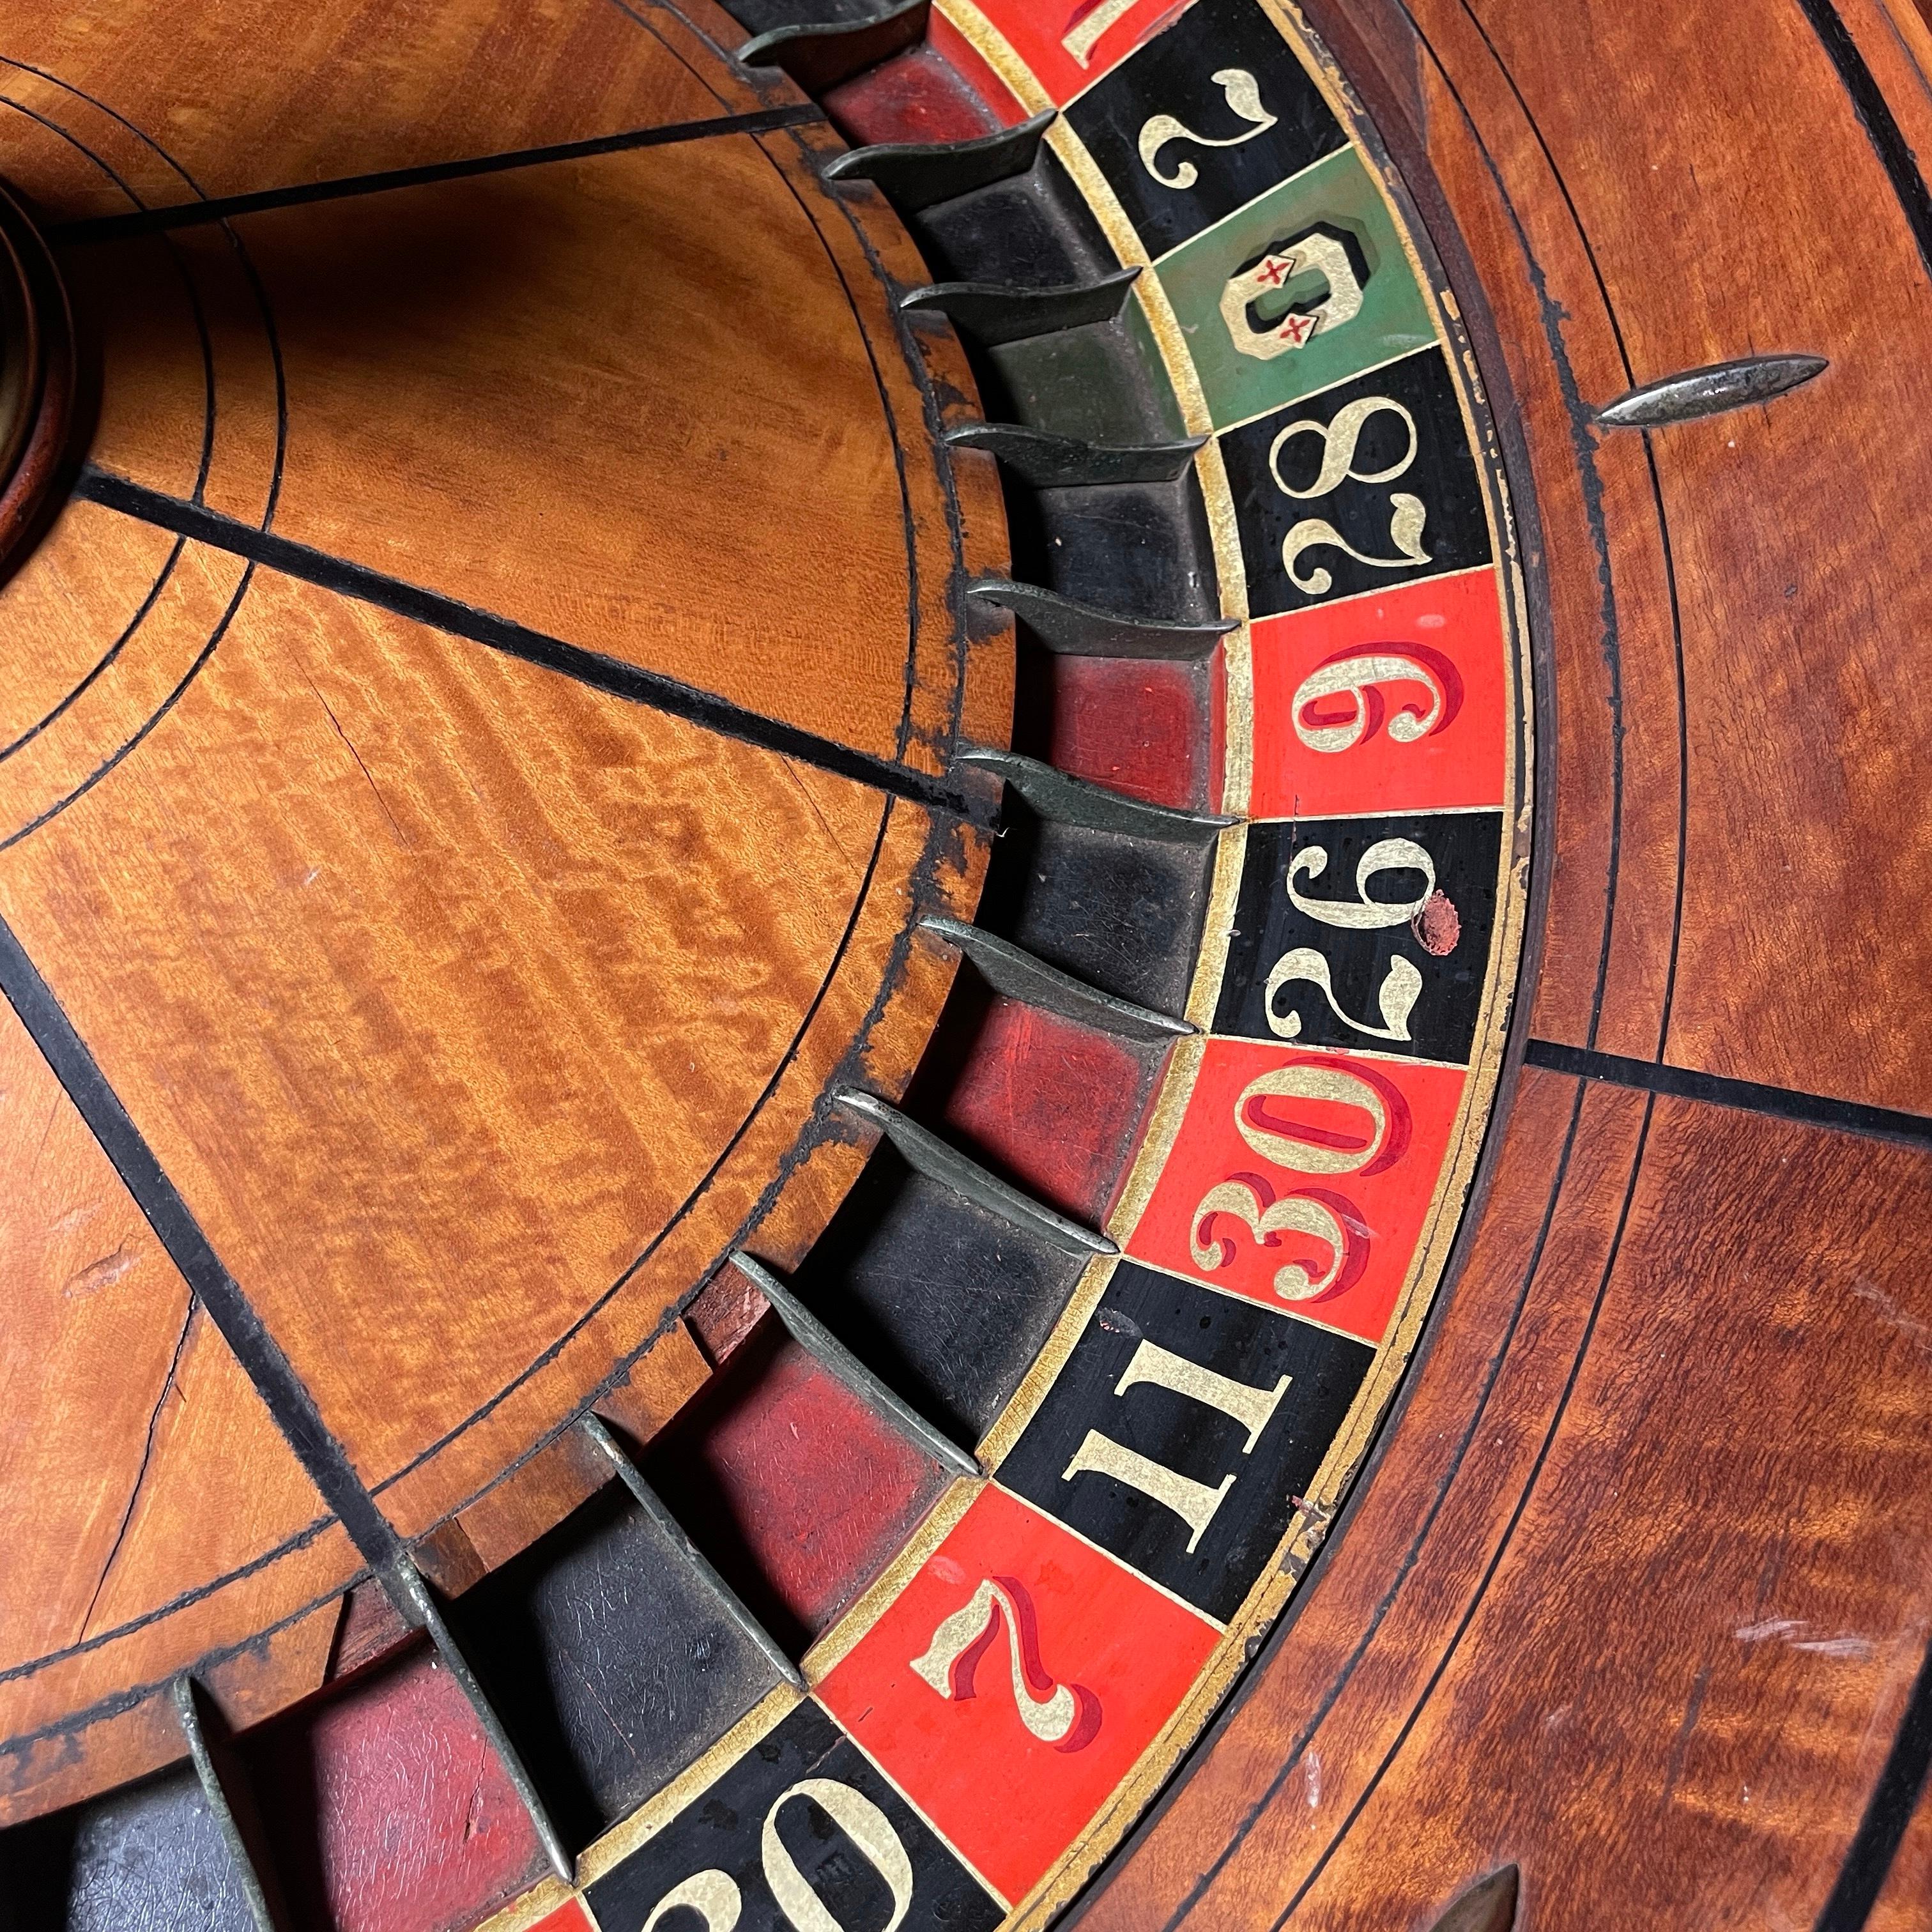 antique roulette table